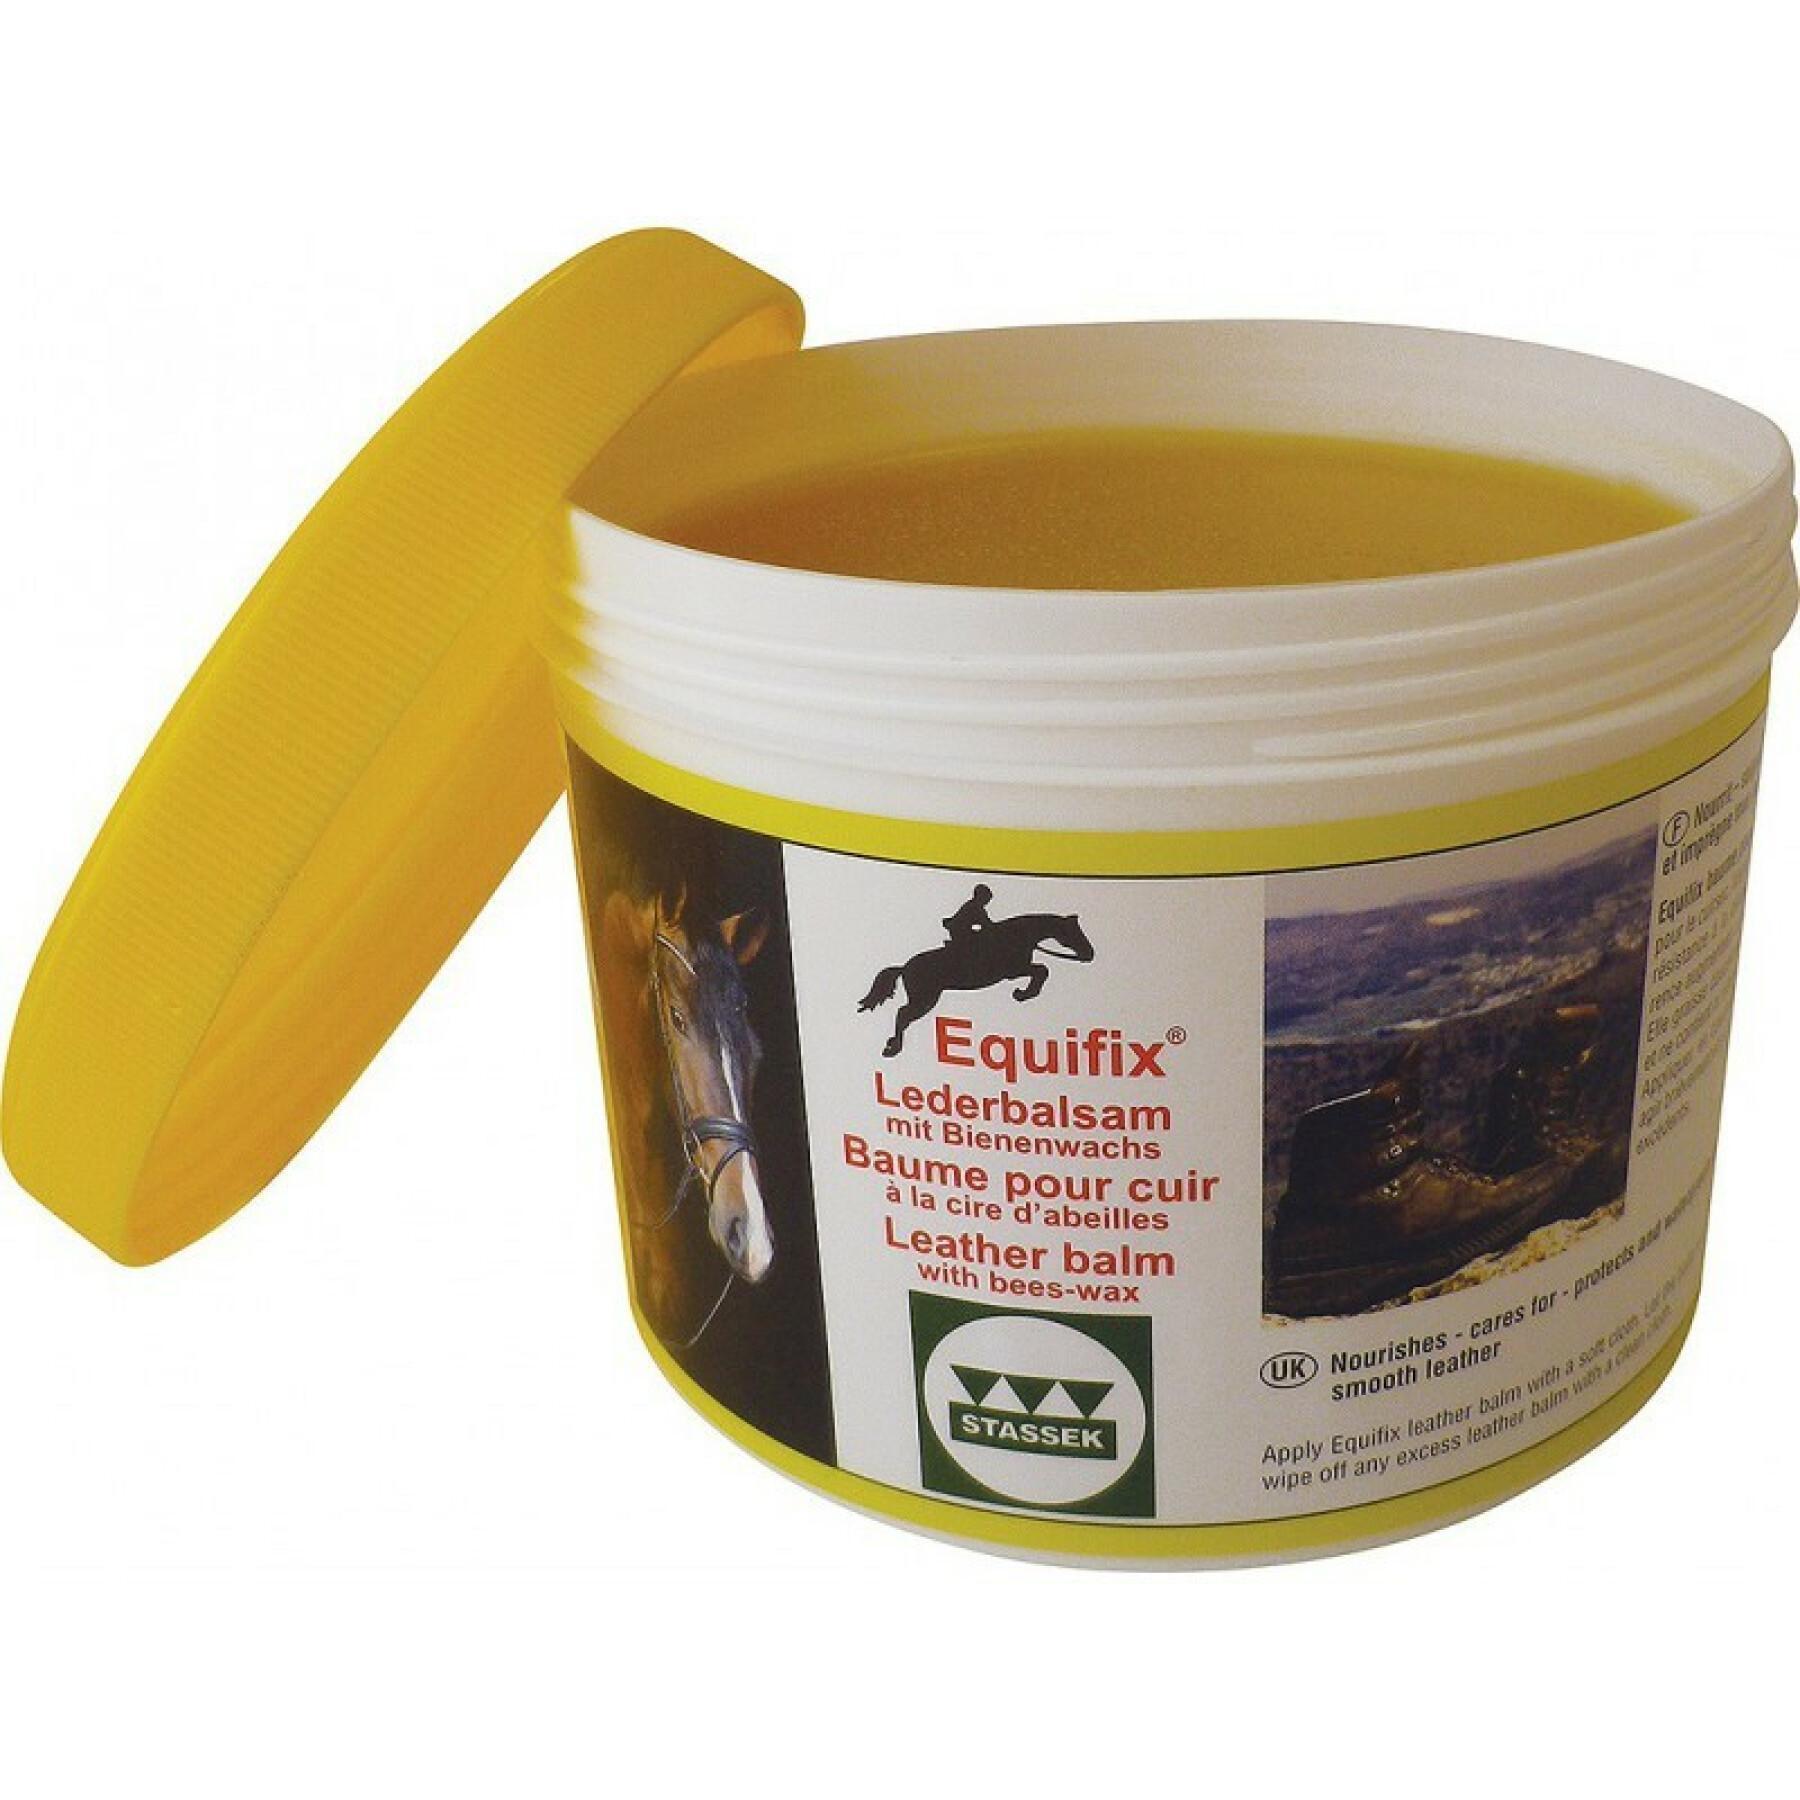 Creme de casco para cavalos Stassek Equifix 500 ml